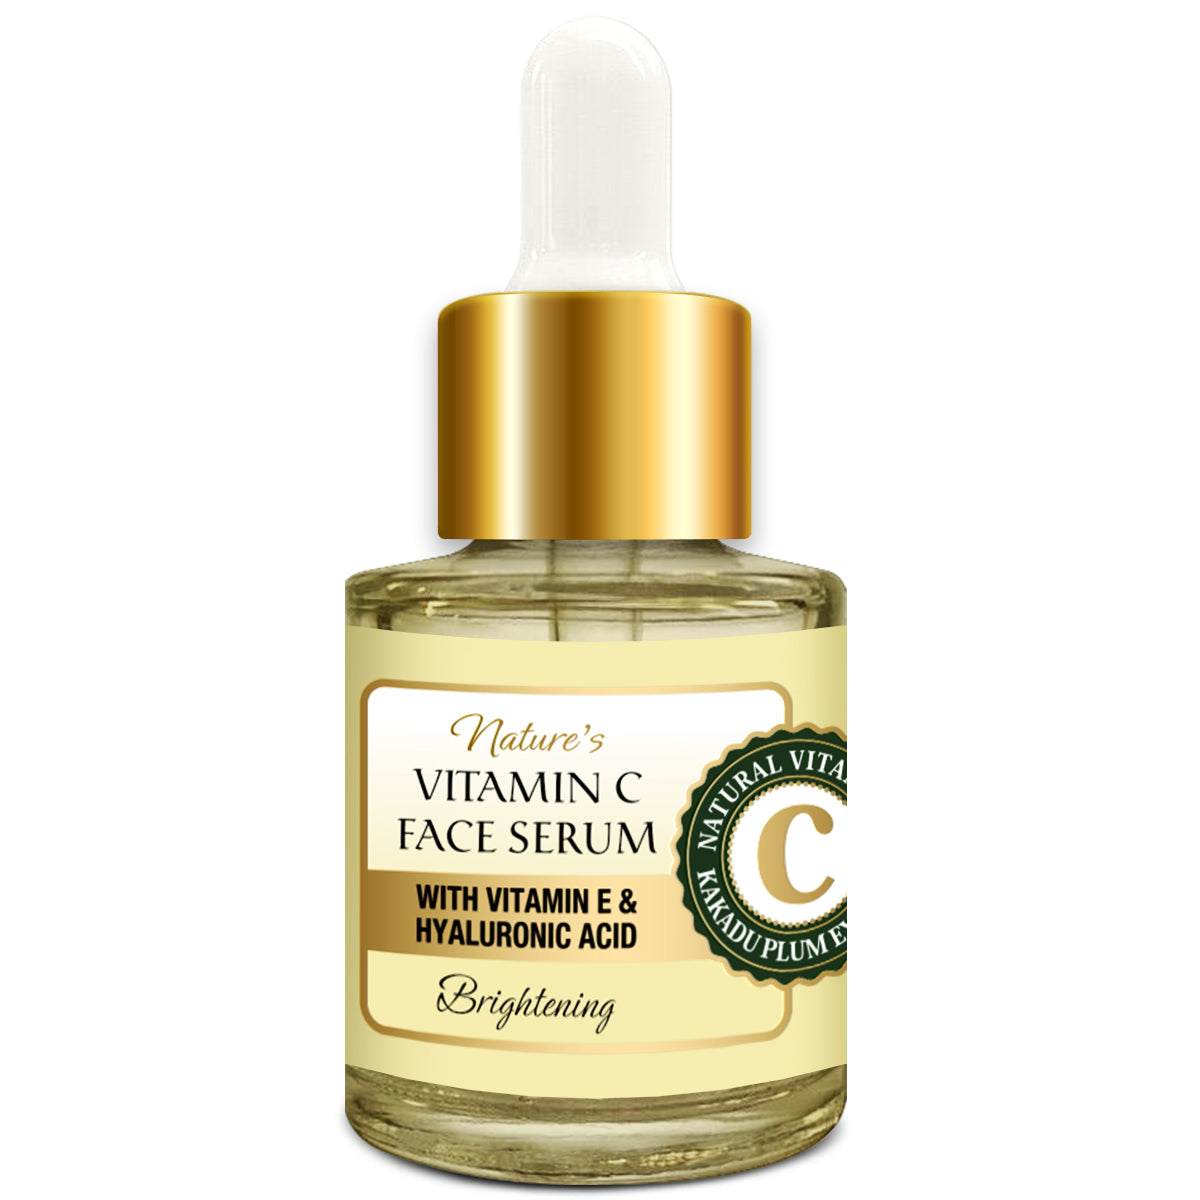 Oriental Botanics Nature's Vitamin C Brightening Face Serum With Vitamin E and Hyaluronic Acid - With Kakadu Plum, 20 ml